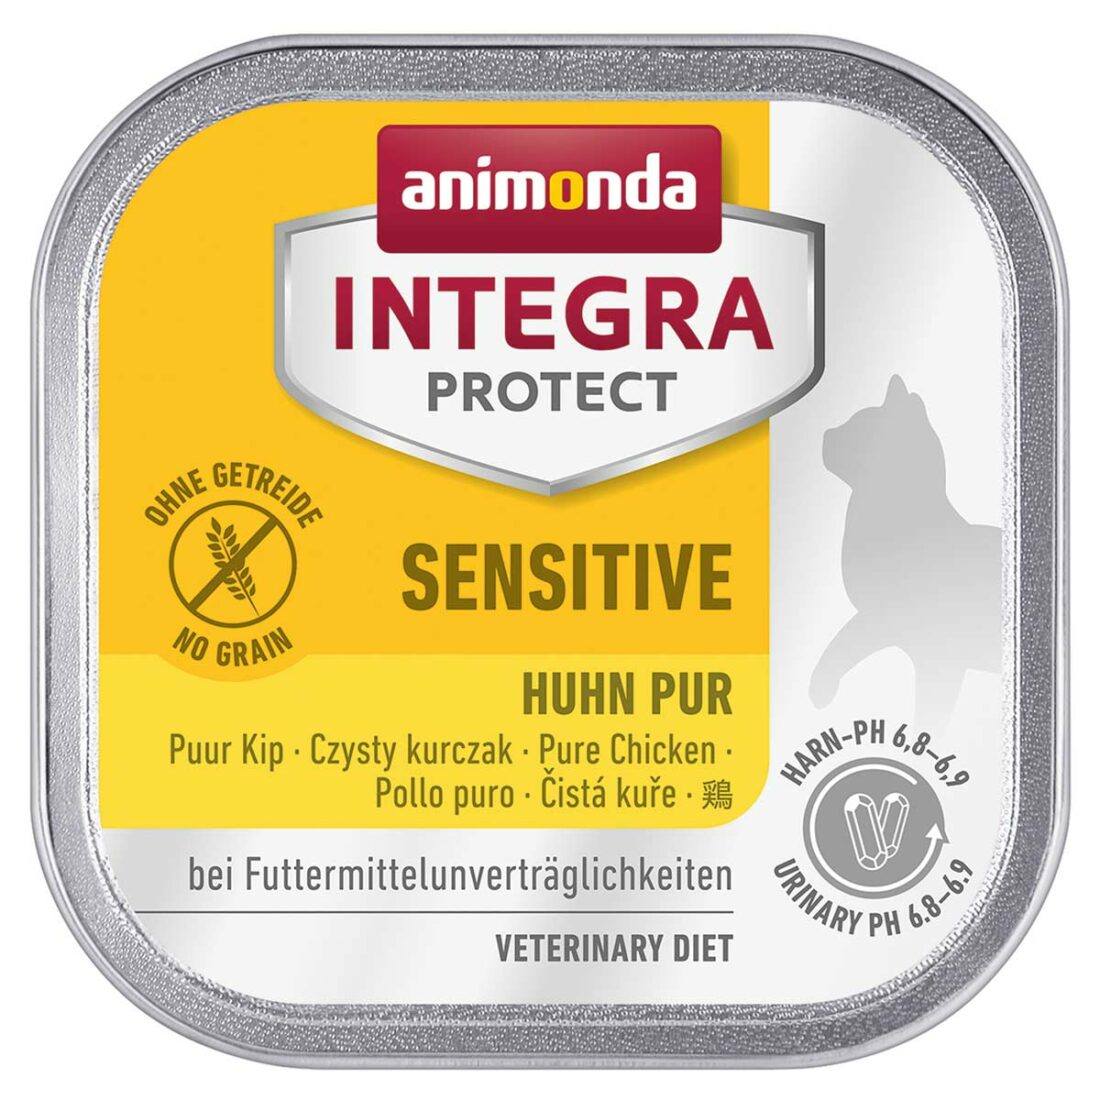 Animonda Integra Protect Sensitive čisté